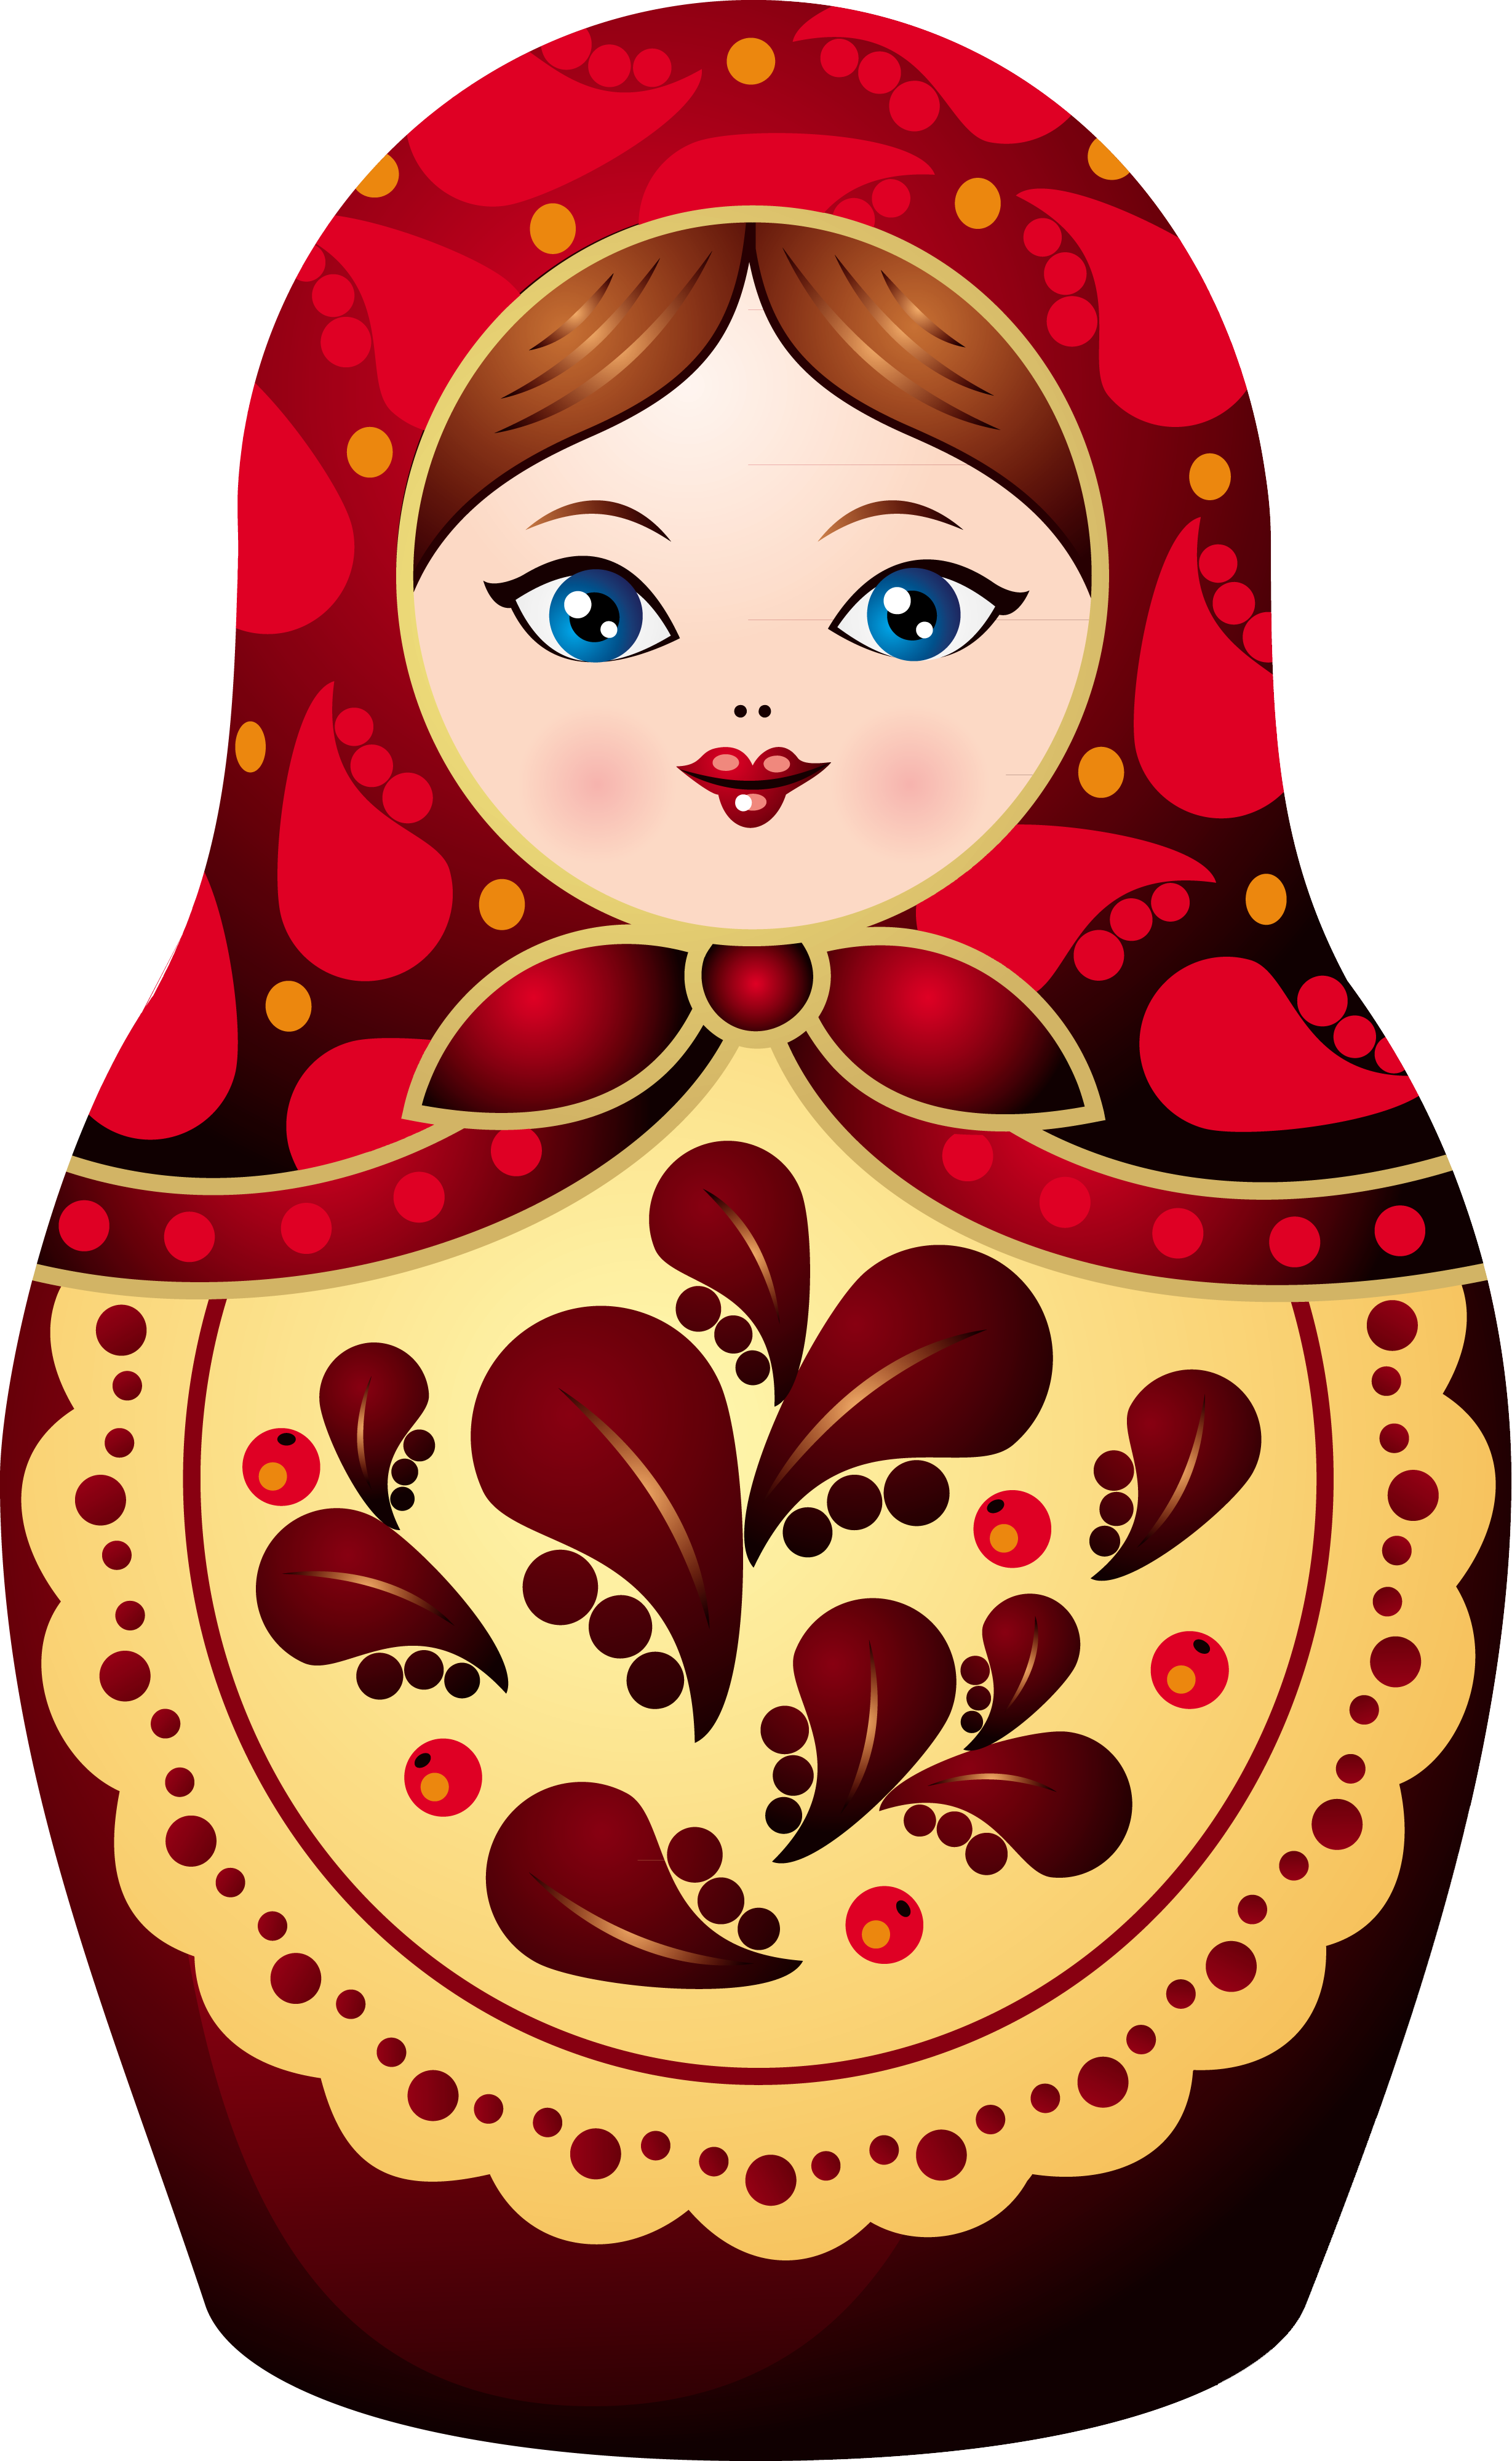 Matryoshka sticker pixers we. Dolls clipart doll russian